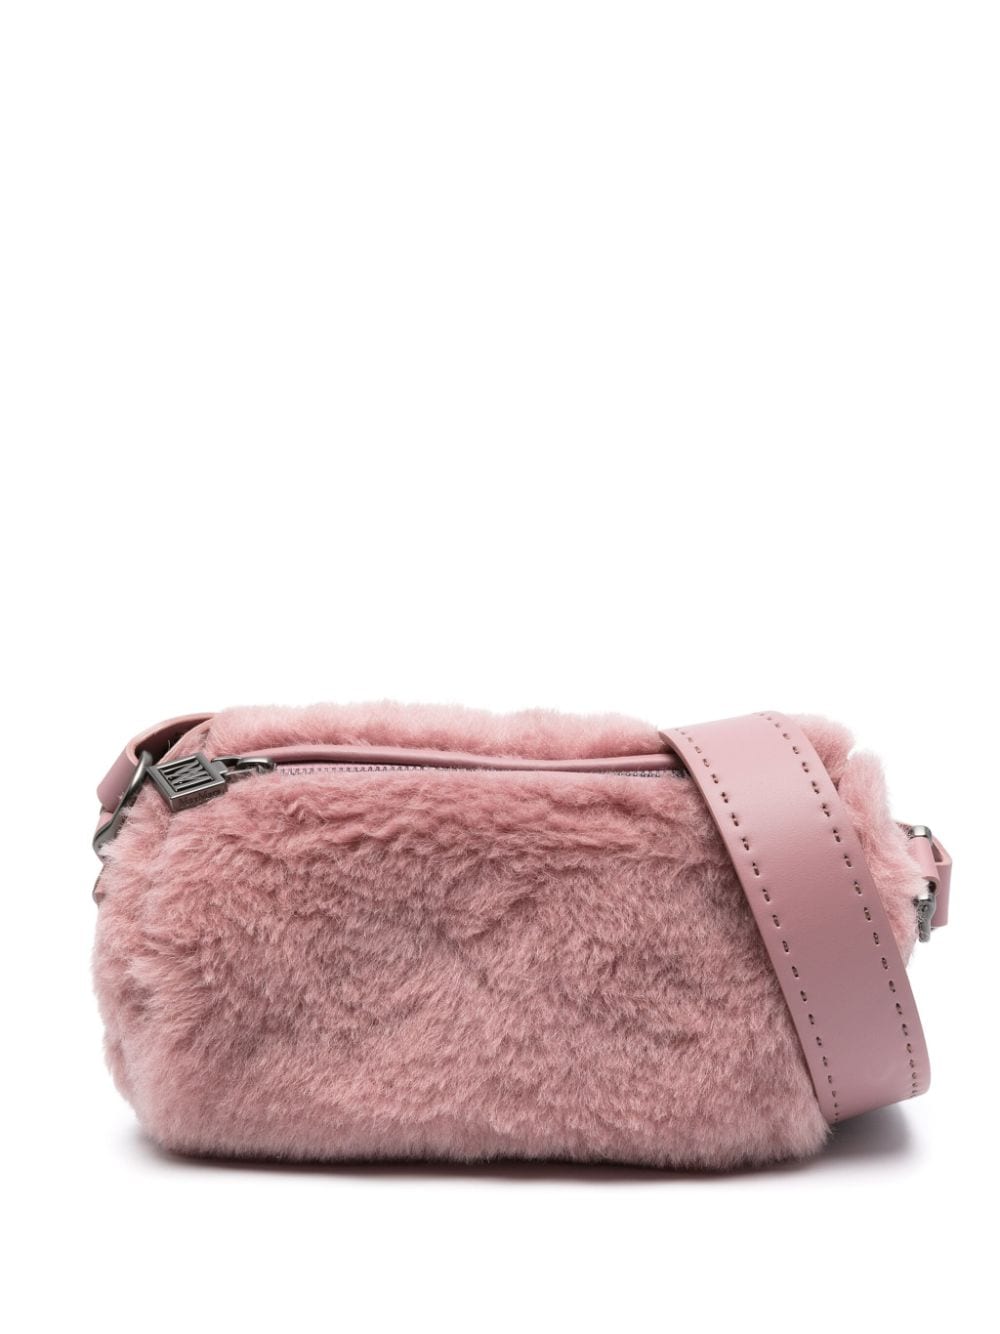 Max Mara Small Teddyrolls Shoulder Bag In Pink